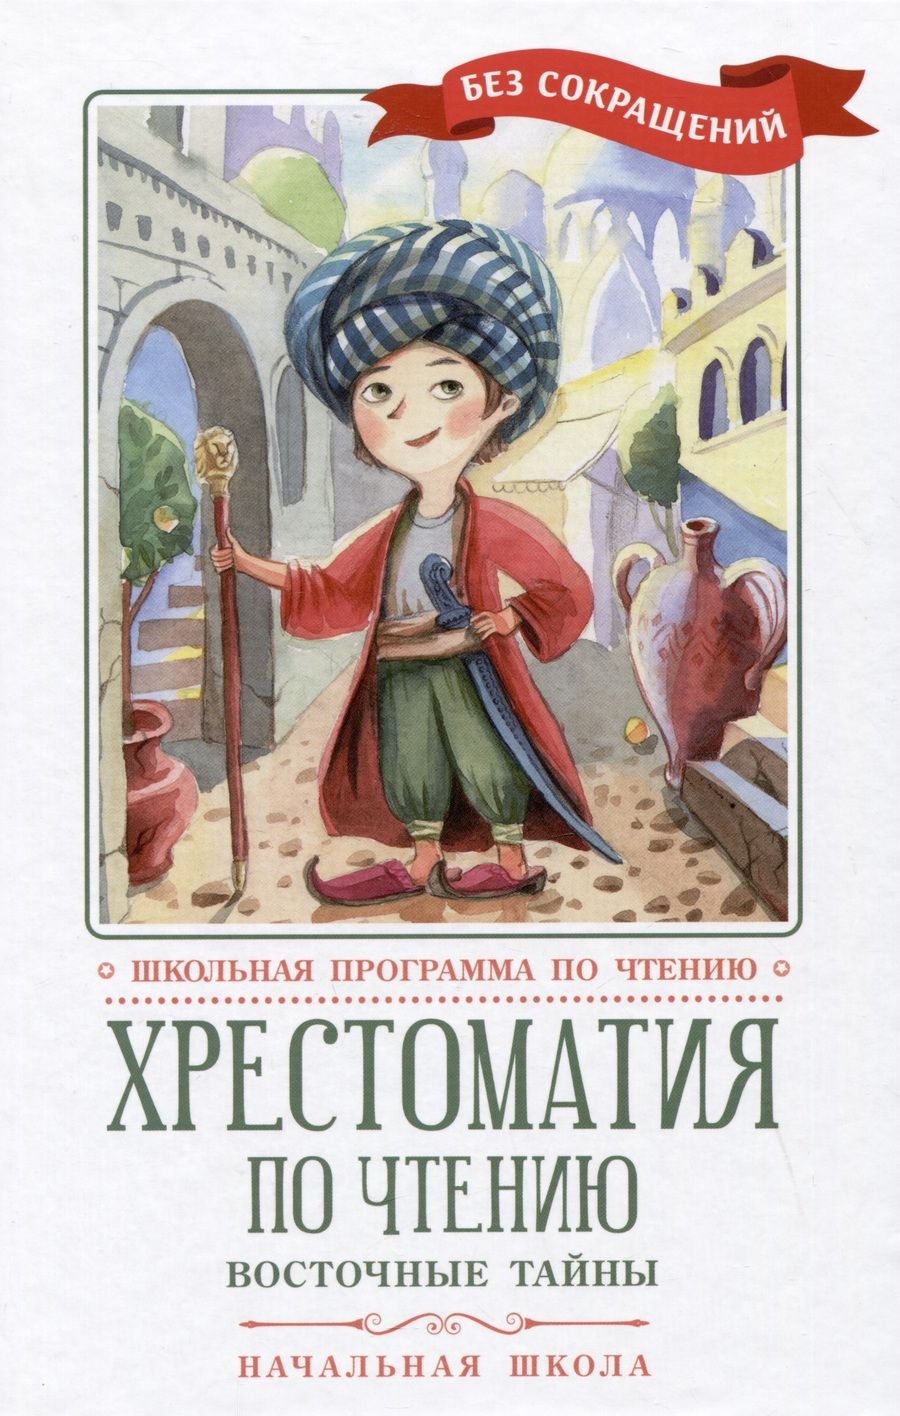 Обложка книги "Хрестоматия по чтению. Восточные тайны. Начальная школа"